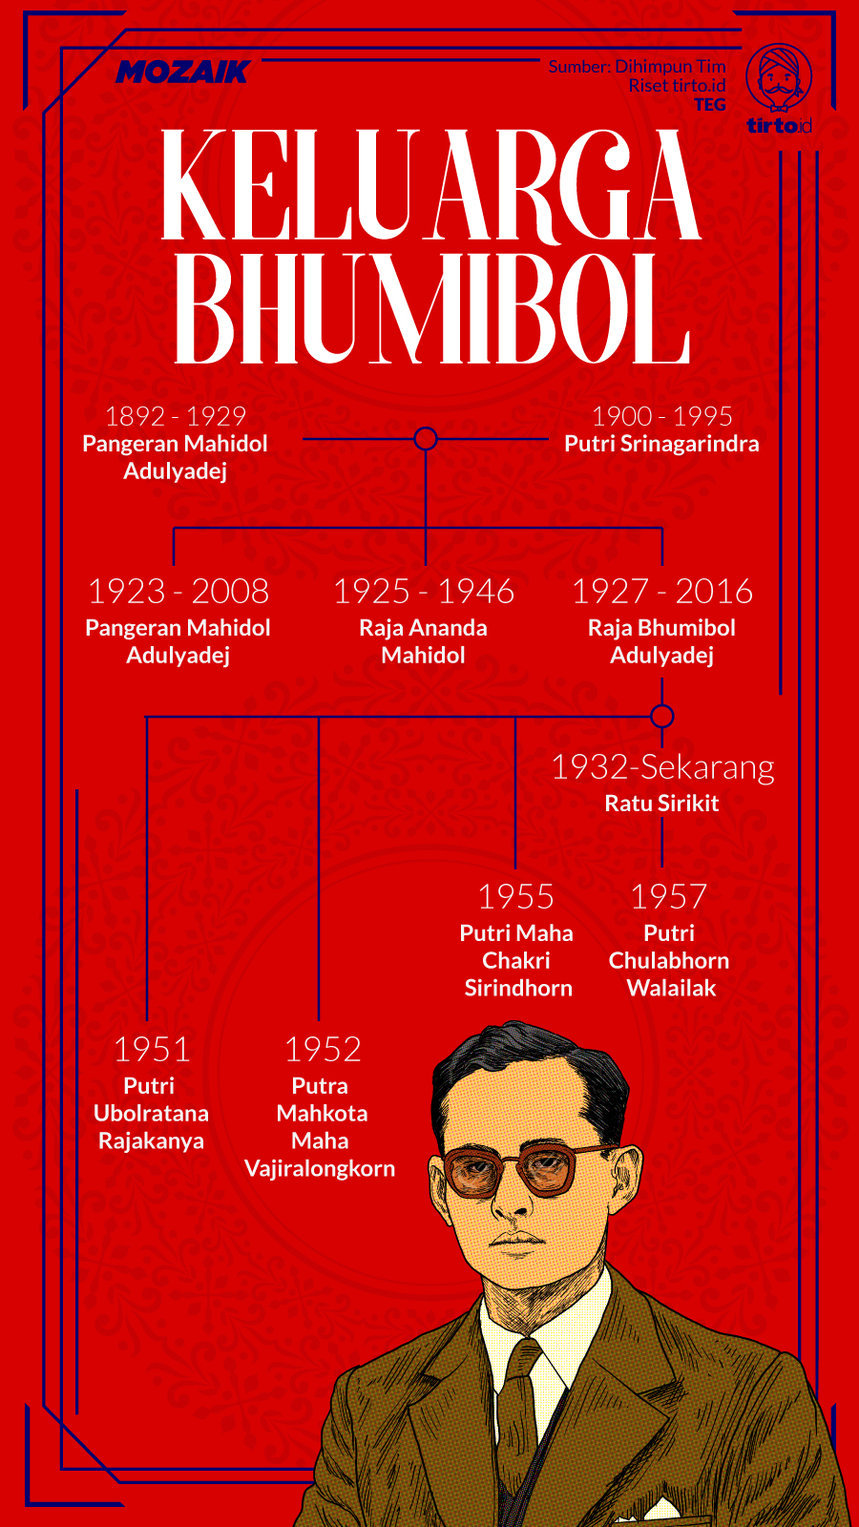 Infografik Mozaik Bhumibol Adulyadej